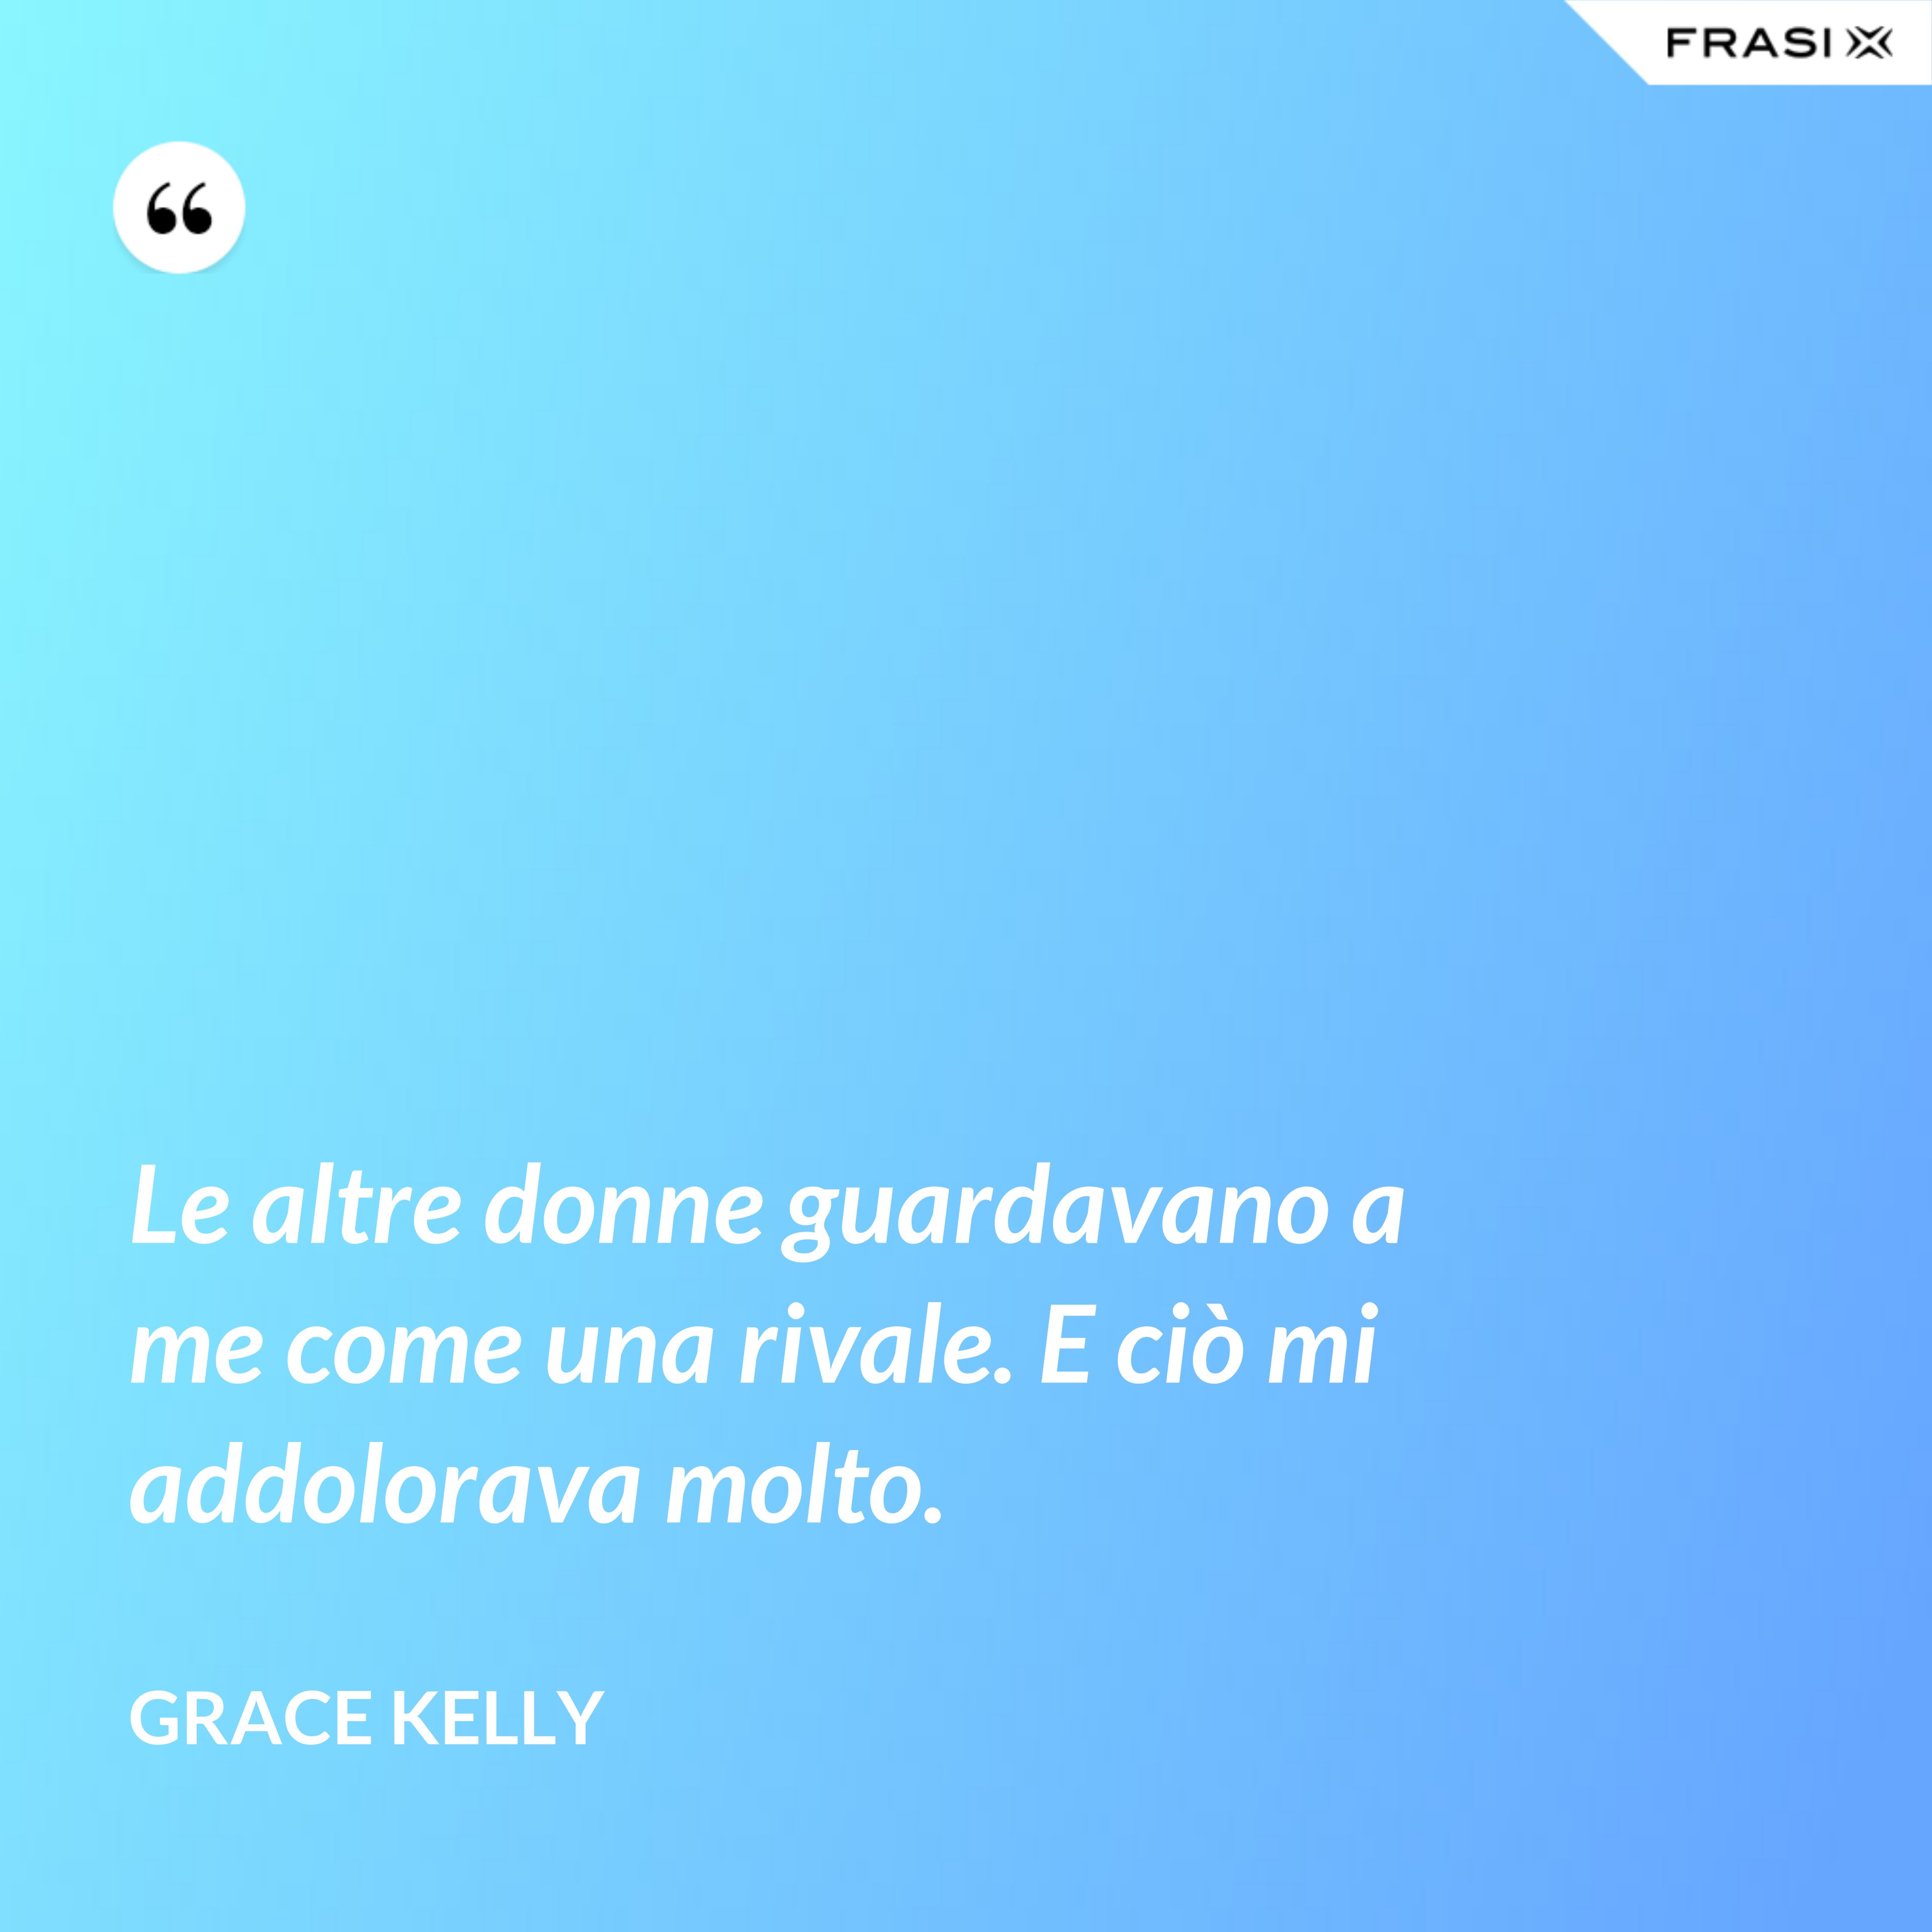 Le altre donne guardavano a me come una rivale. E ciò mi addolorava molto. - Grace Kelly